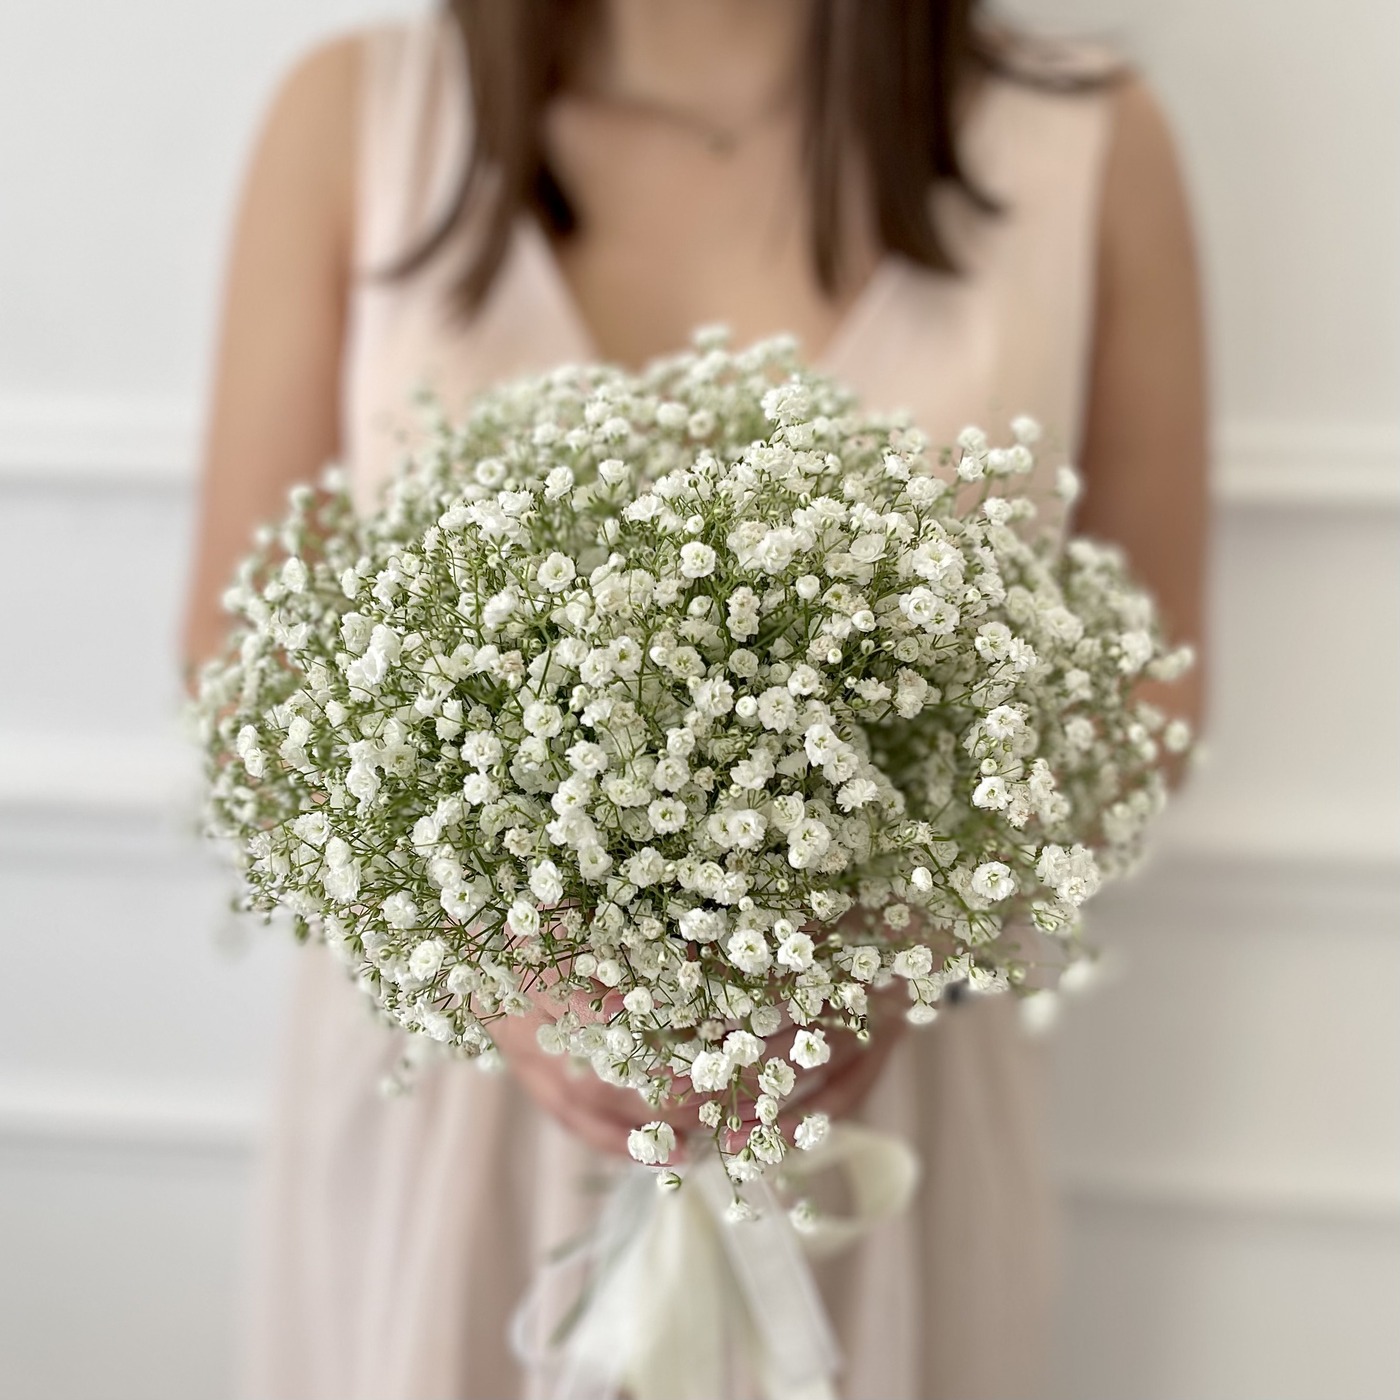 Букет для невесты на свадьбу купить москва домашние цветы купить в спб большой выбор